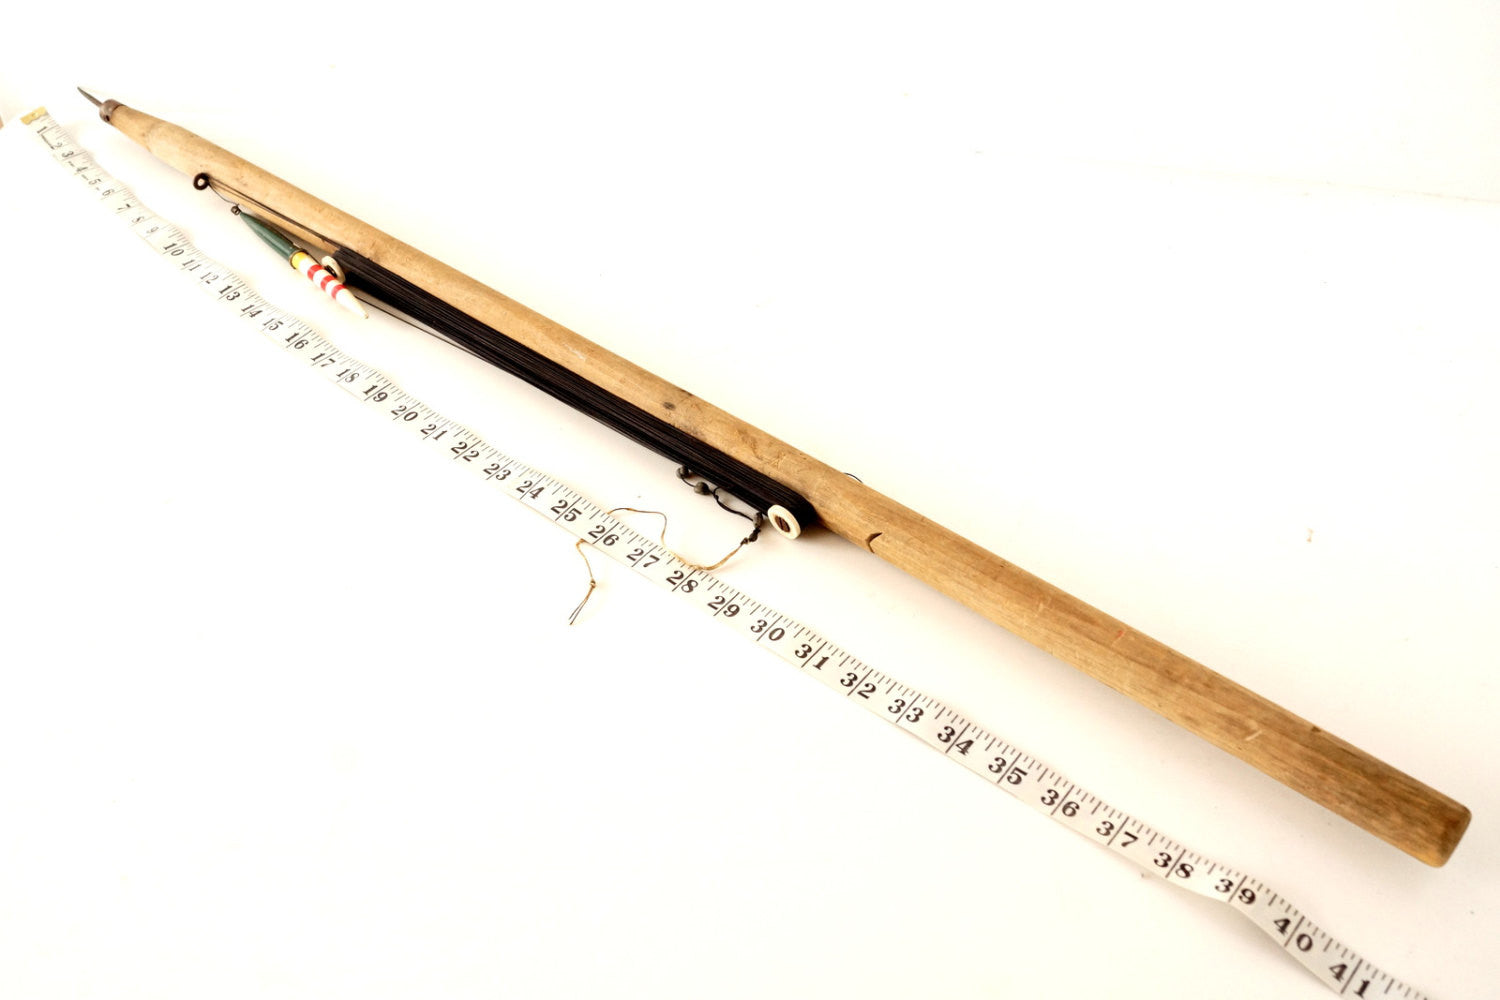 2 Vintage Ice Fishing Rod Pole Handmade Wood Fiberglass ? Jig